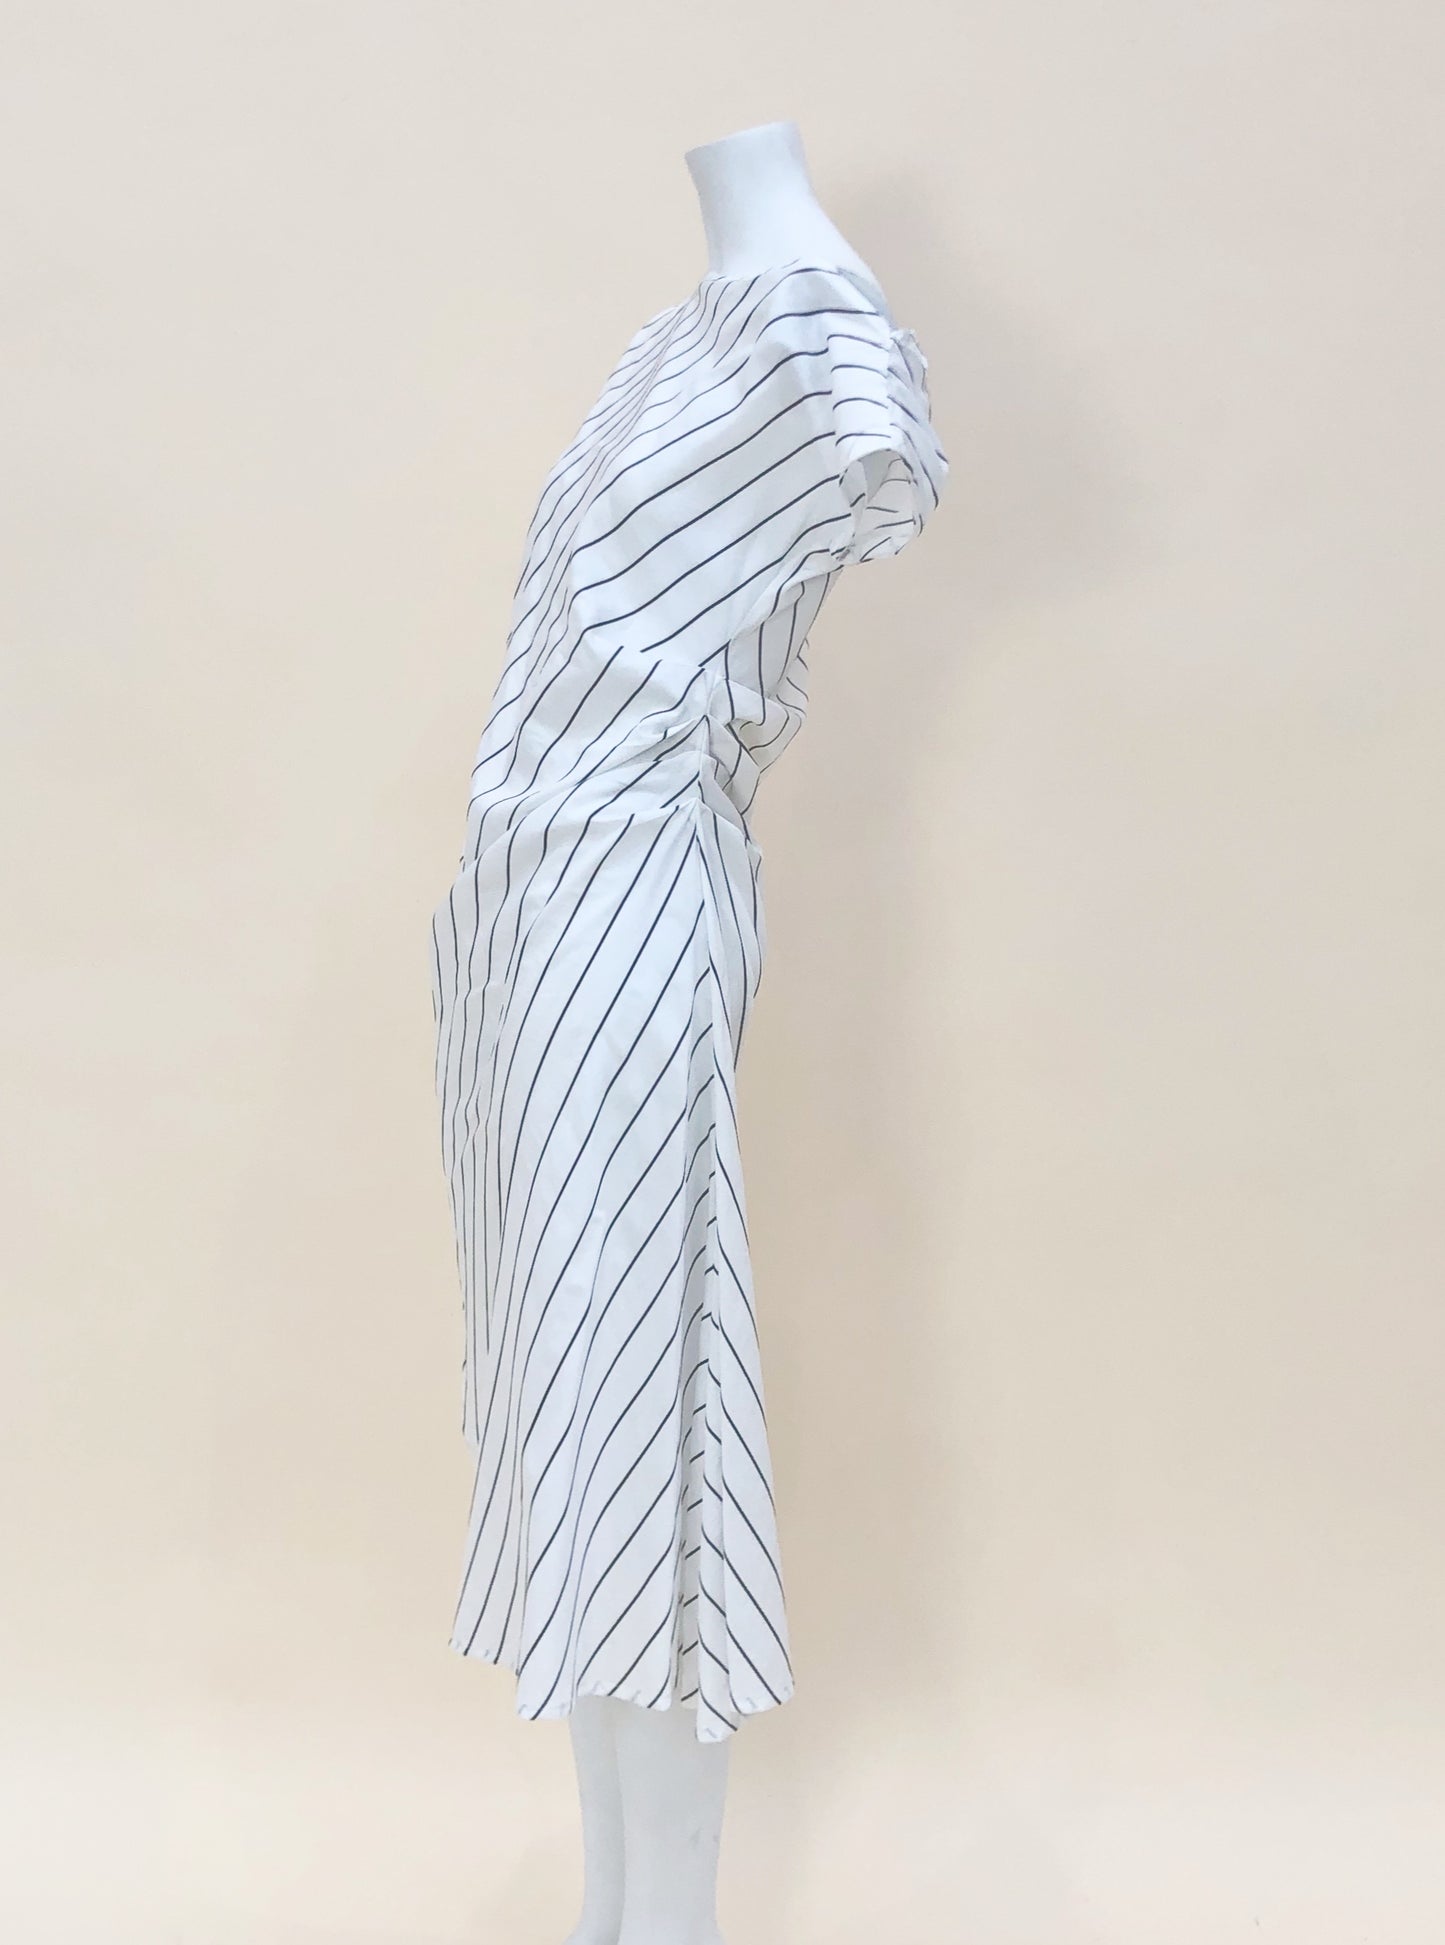 Striped Bias Dress